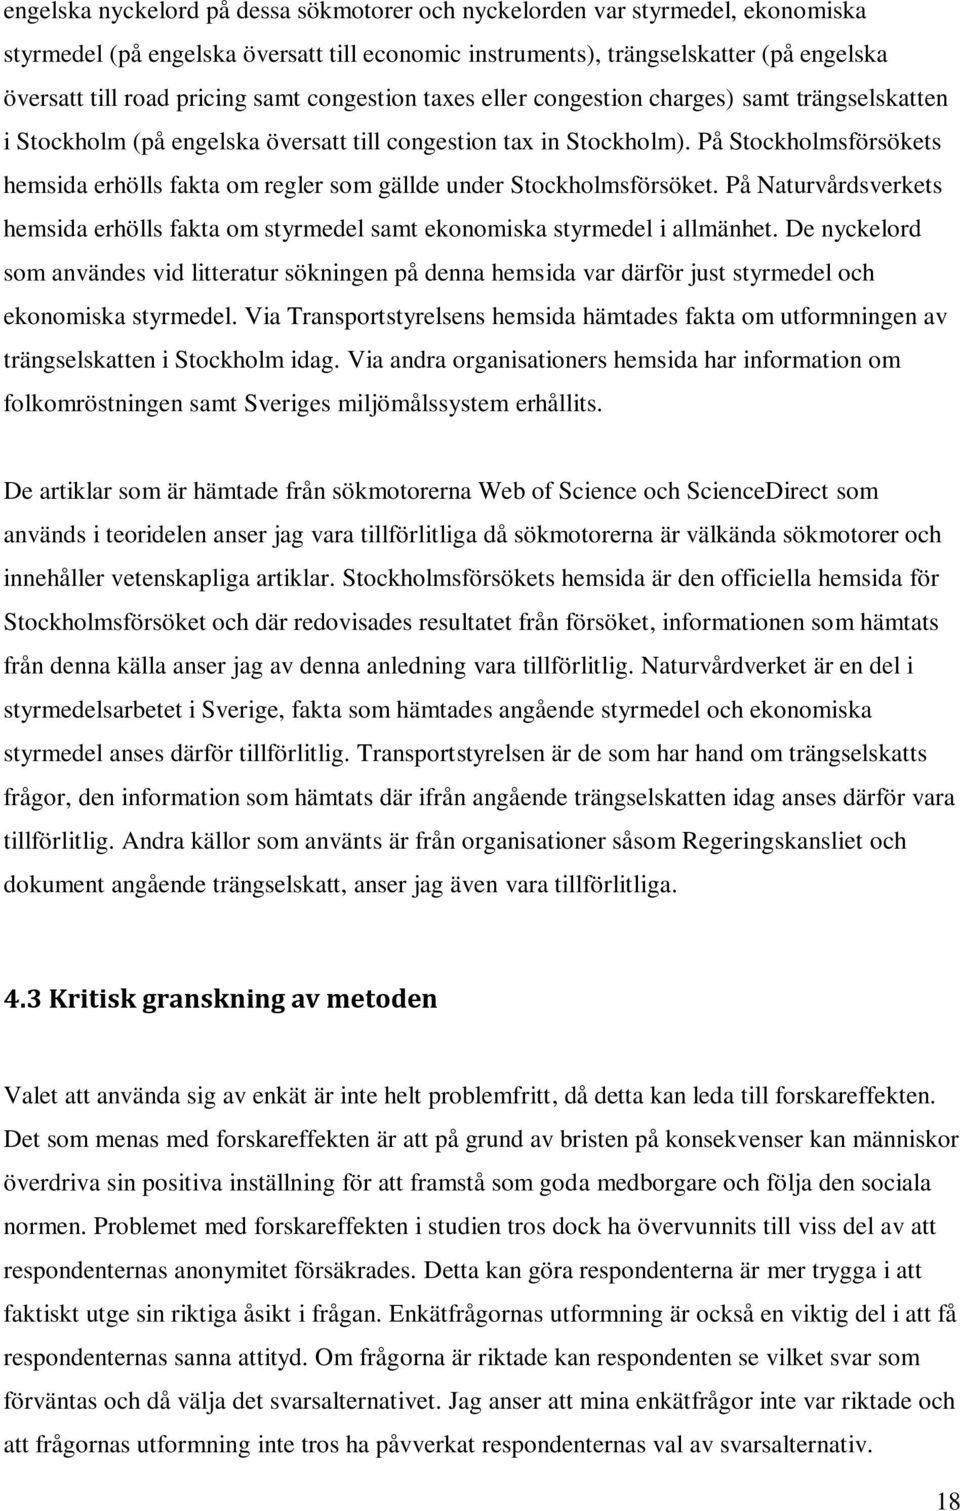 På Stockholmsförsökets hemsida erhölls fakta om regler som gällde under Stockholmsförsöket. På Naturvårdsverkets hemsida erhölls fakta om styrmedel samt ekonomiska styrmedel i allmänhet.